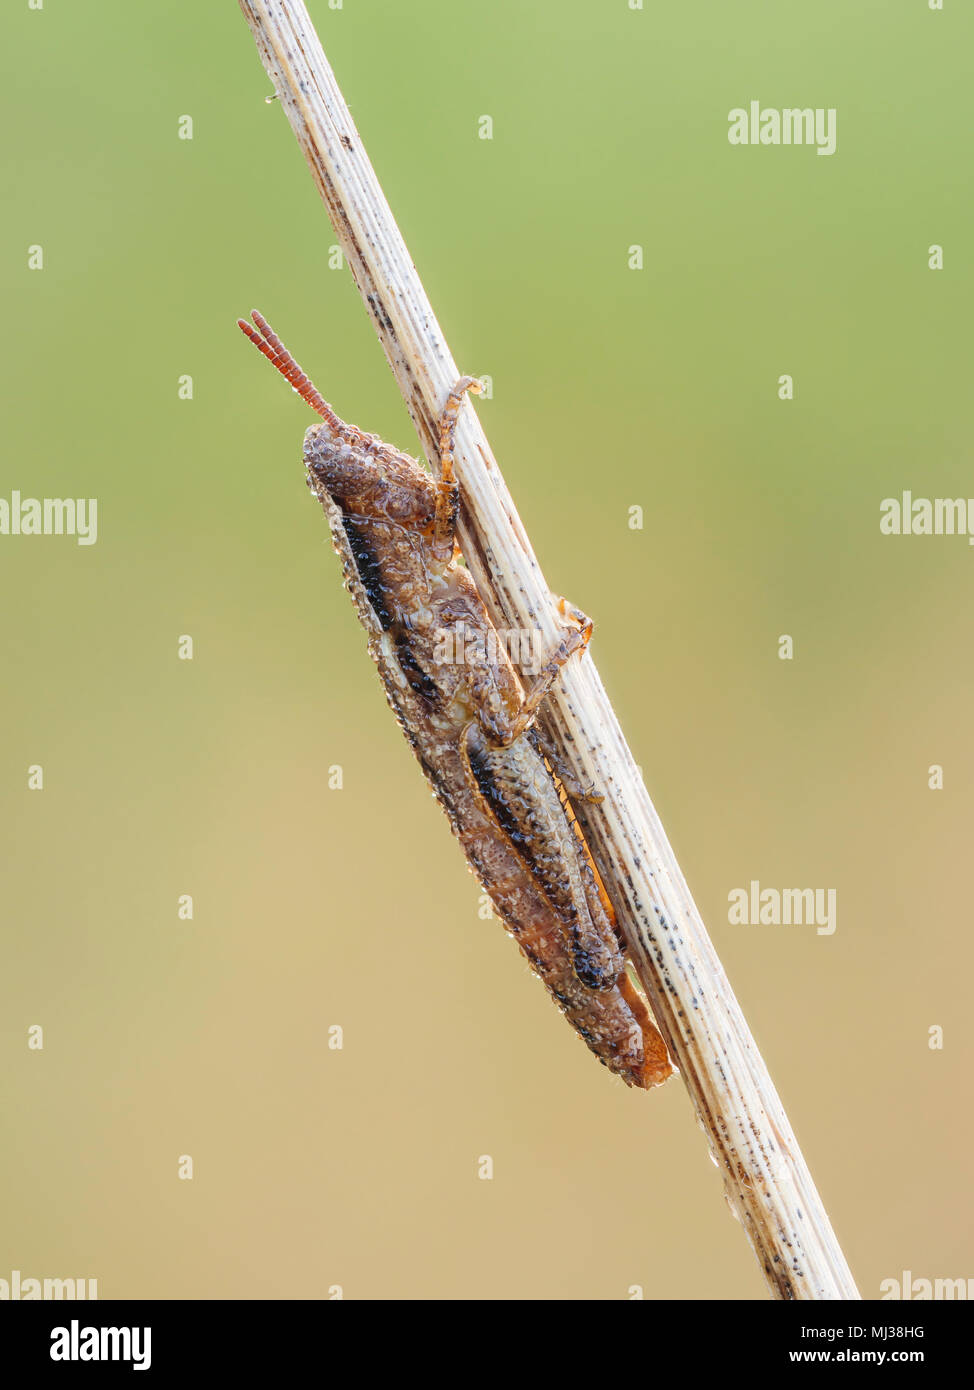 Una ninfa ricoperta di rugiada e corta (Aptenopedes appalachee) si riscalda sulla vegetazione la mattina presto. Foto Stock